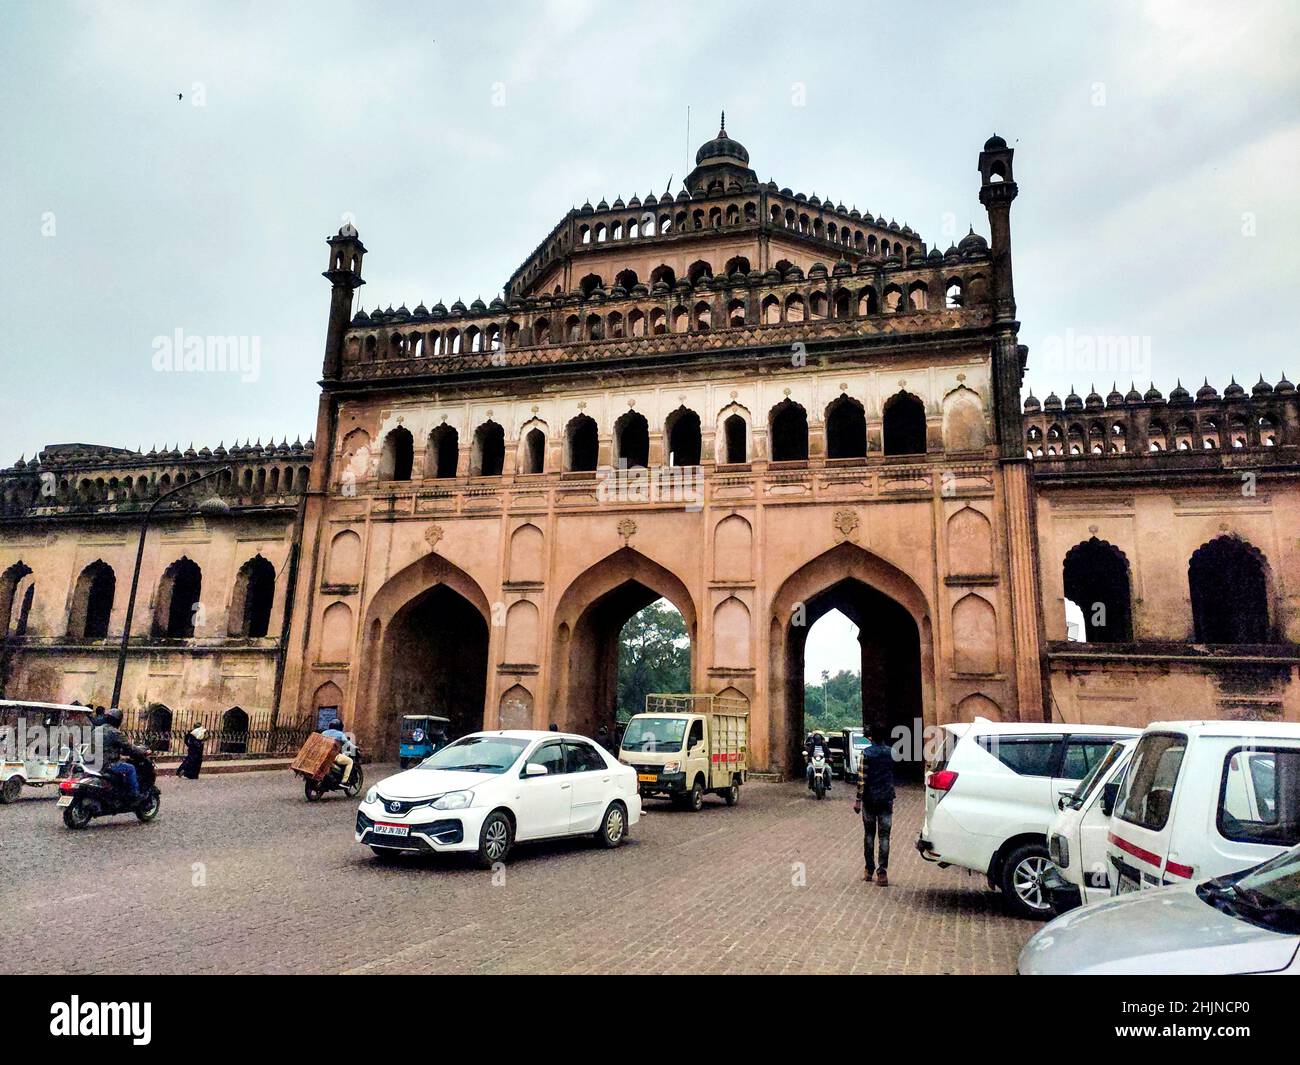 Le Rumi Darwaza (porte turque) à Lucknow, dans l'État indien de l'Uttar Pradesh, est une porte imposante.Rumi Darwaza est un exemple de l'architecture d'Awadhi. Banque D'Images